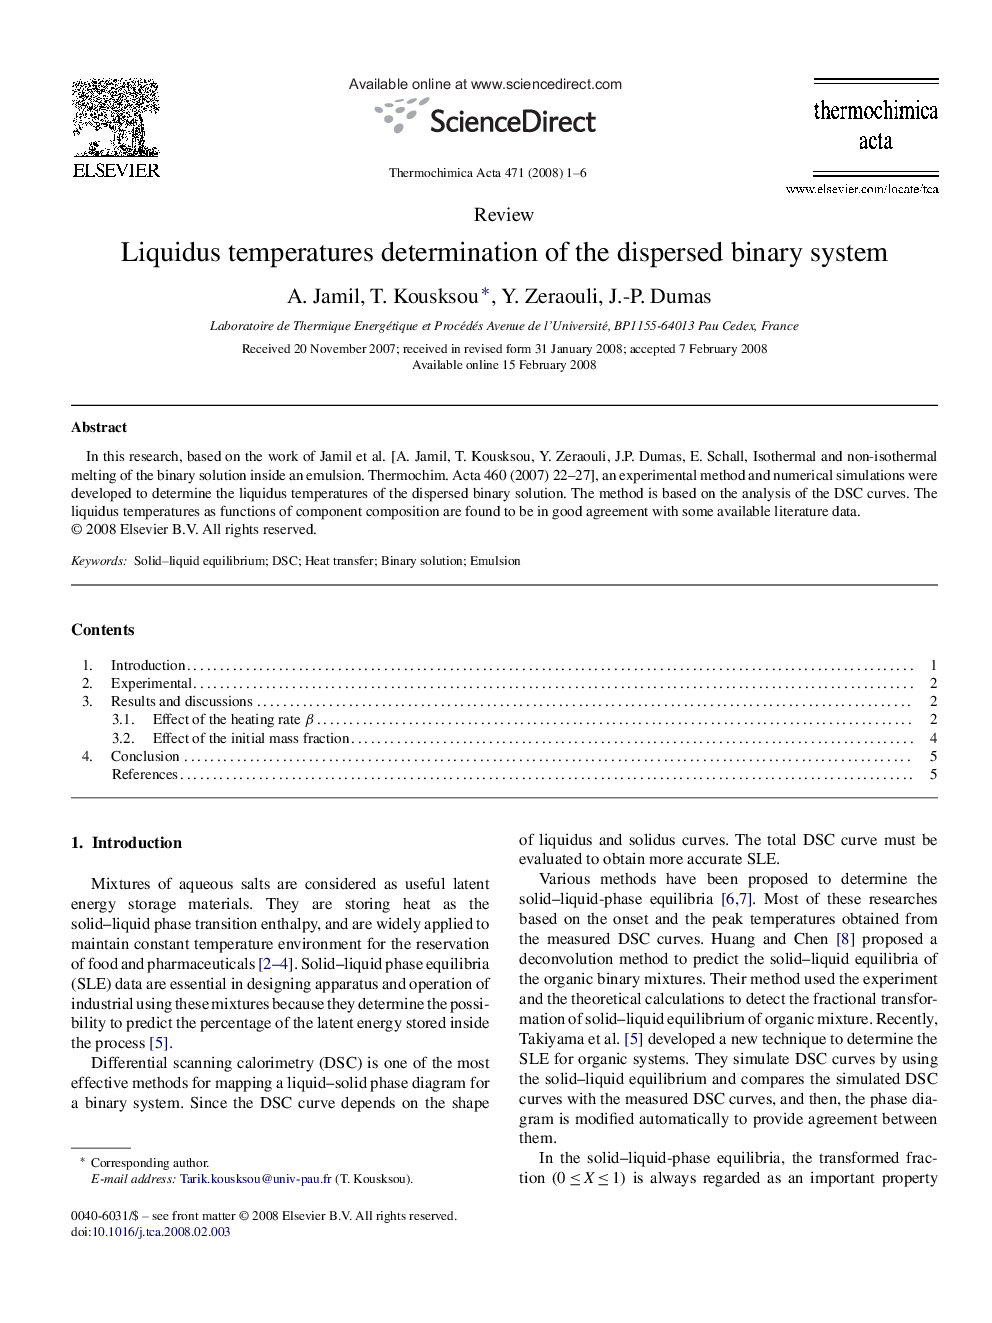 Liquidus temperatures determination of the dispersed binary system